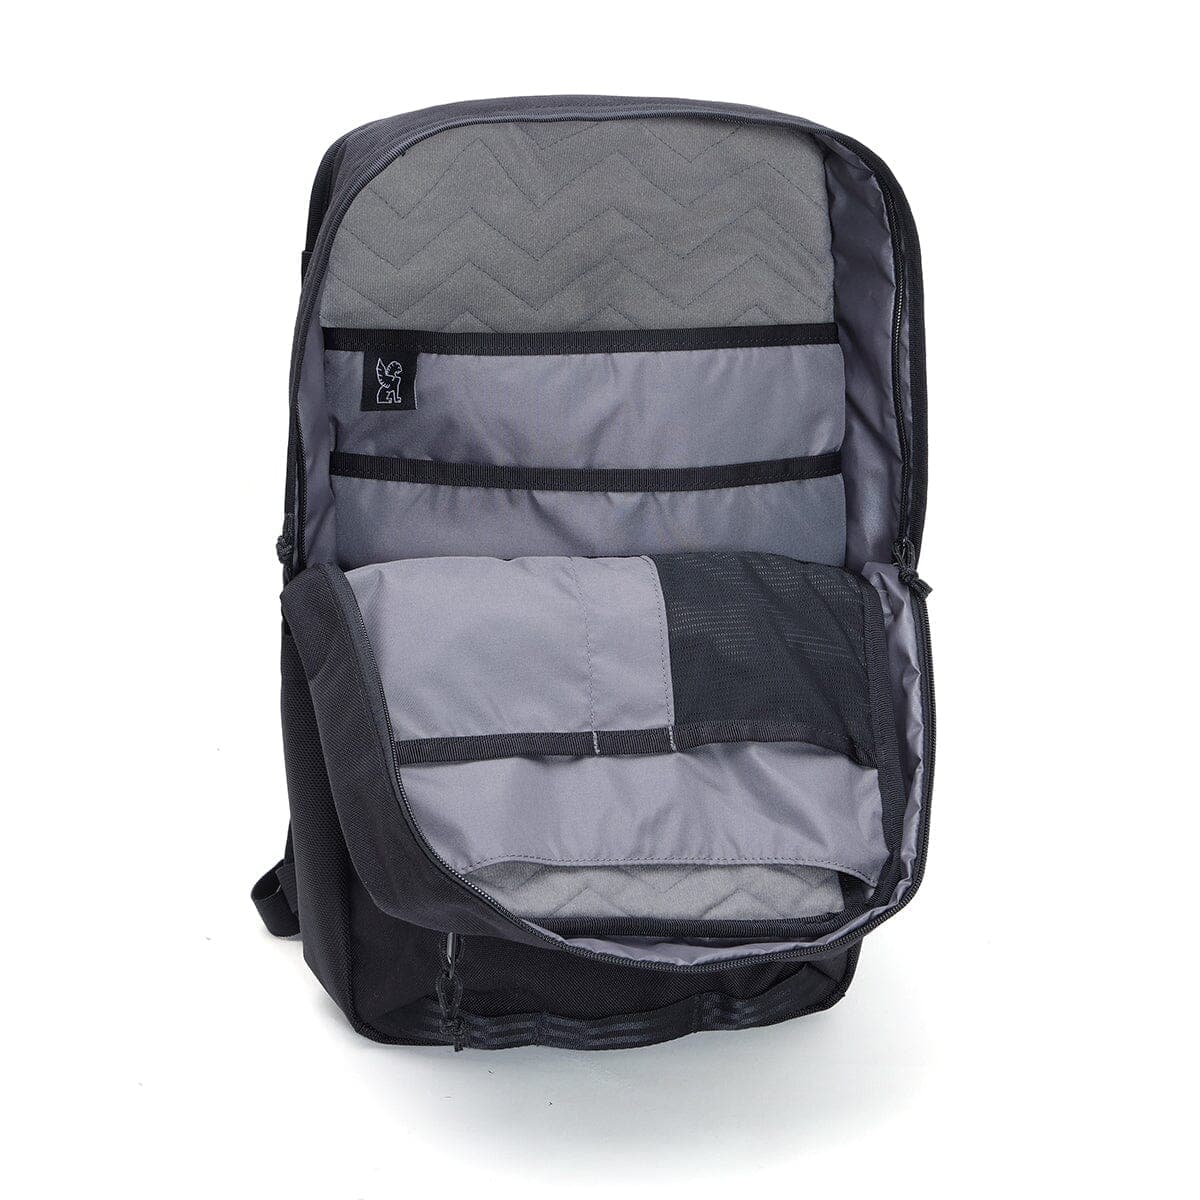 Hondo backpack inside one side